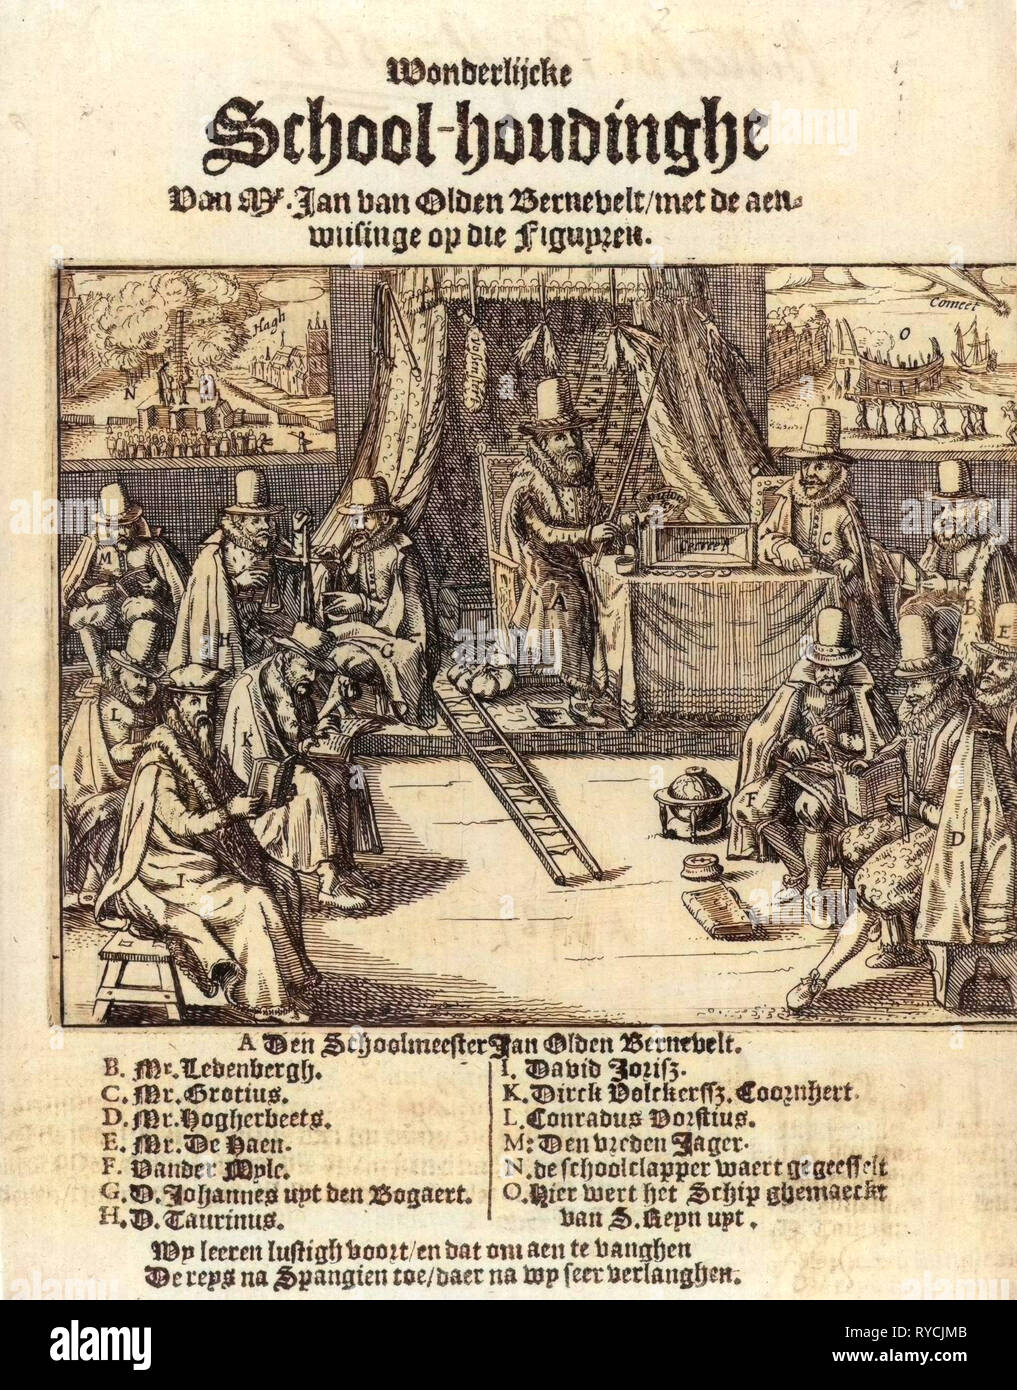 Imprimer titre de la brochure en 1618 Wonderlijcke houdinghe, intitulé L'École M. Jan van Oldenbarevelt, Anonyme, 1618 Banque D'Images